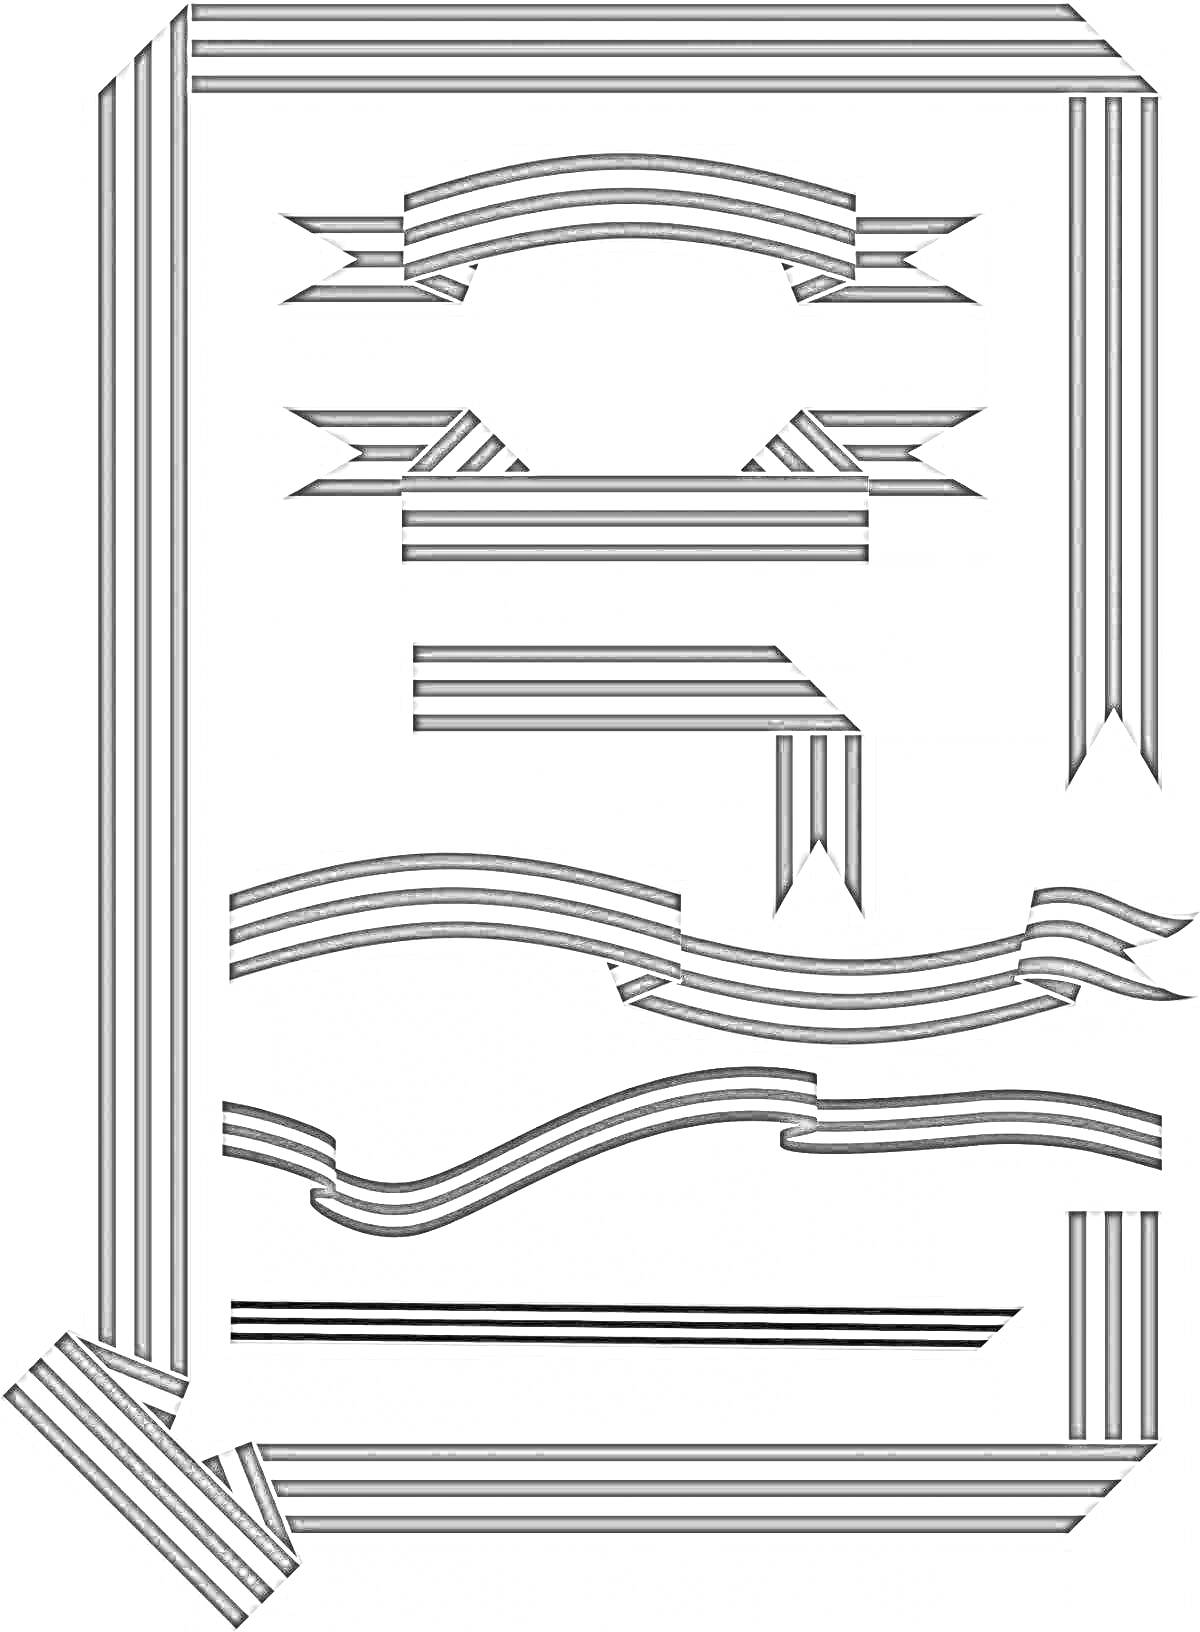 Раскраска Георгиевская лента в виде рамки с различными элементами: уголки, банты, прямые и изогнутые полосы.